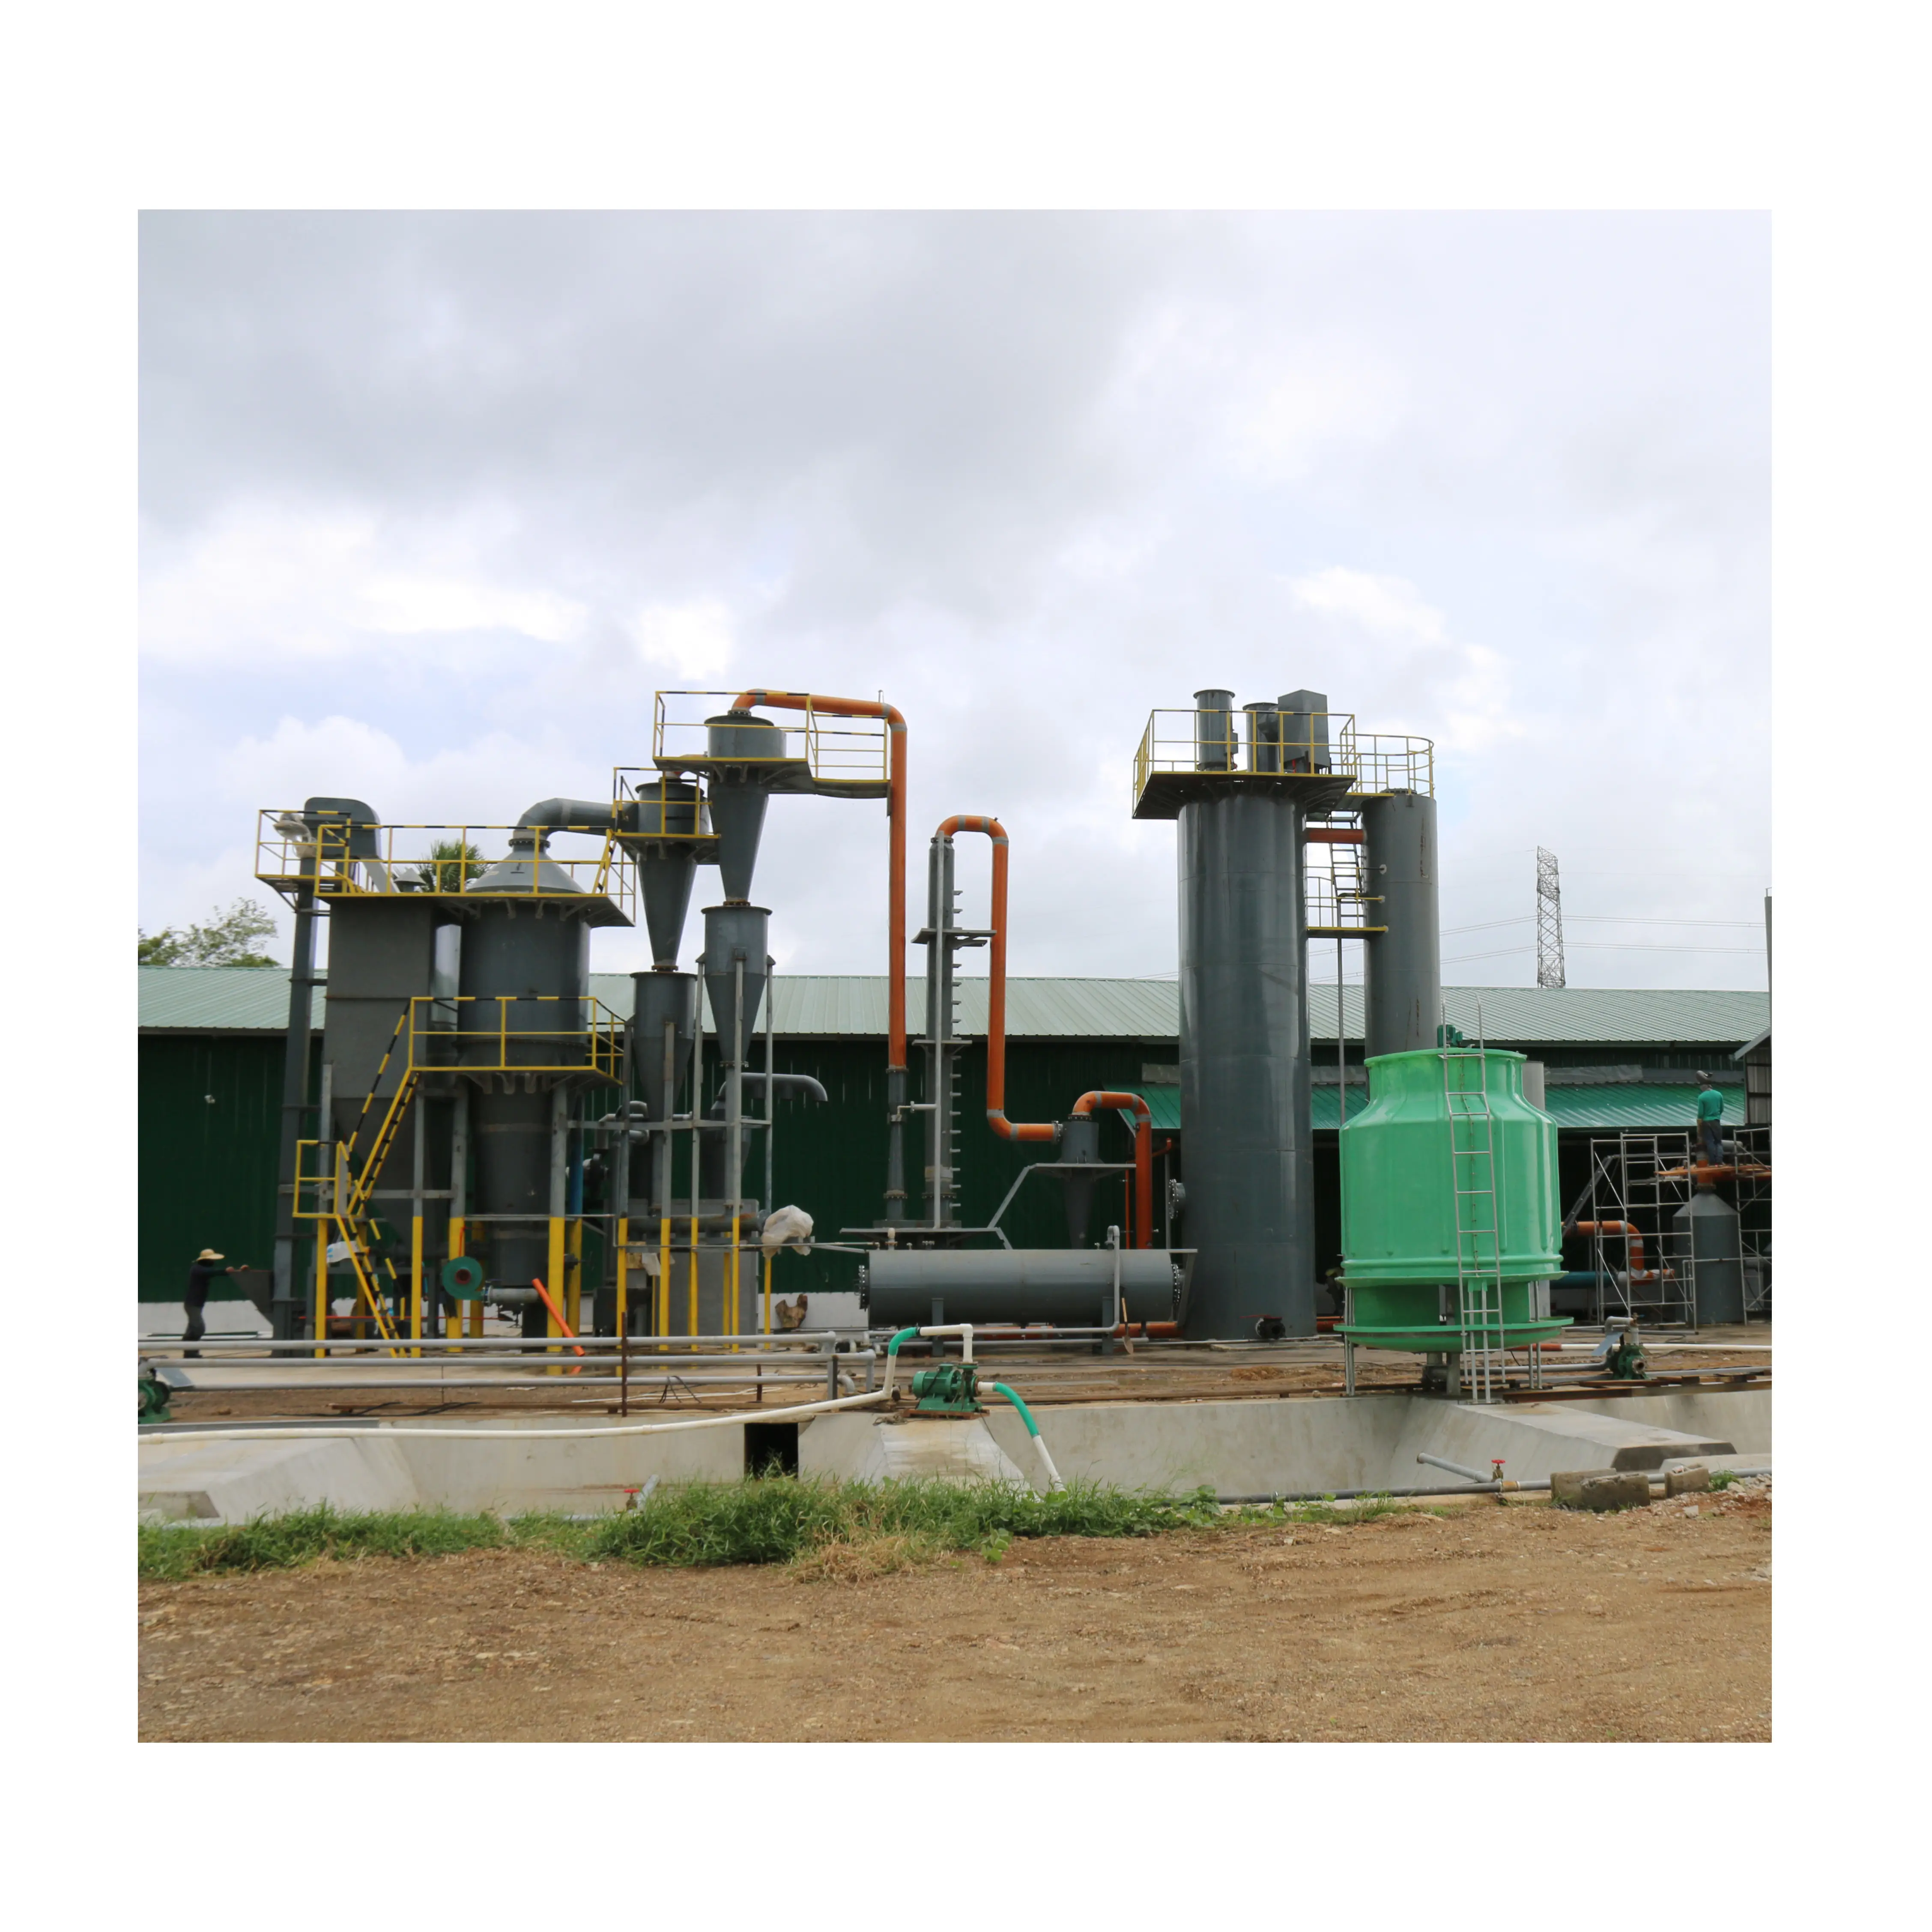 15 мВт установка для газификации биомассы с использованием остатков сельскохозяйственных культур в качестве топлива